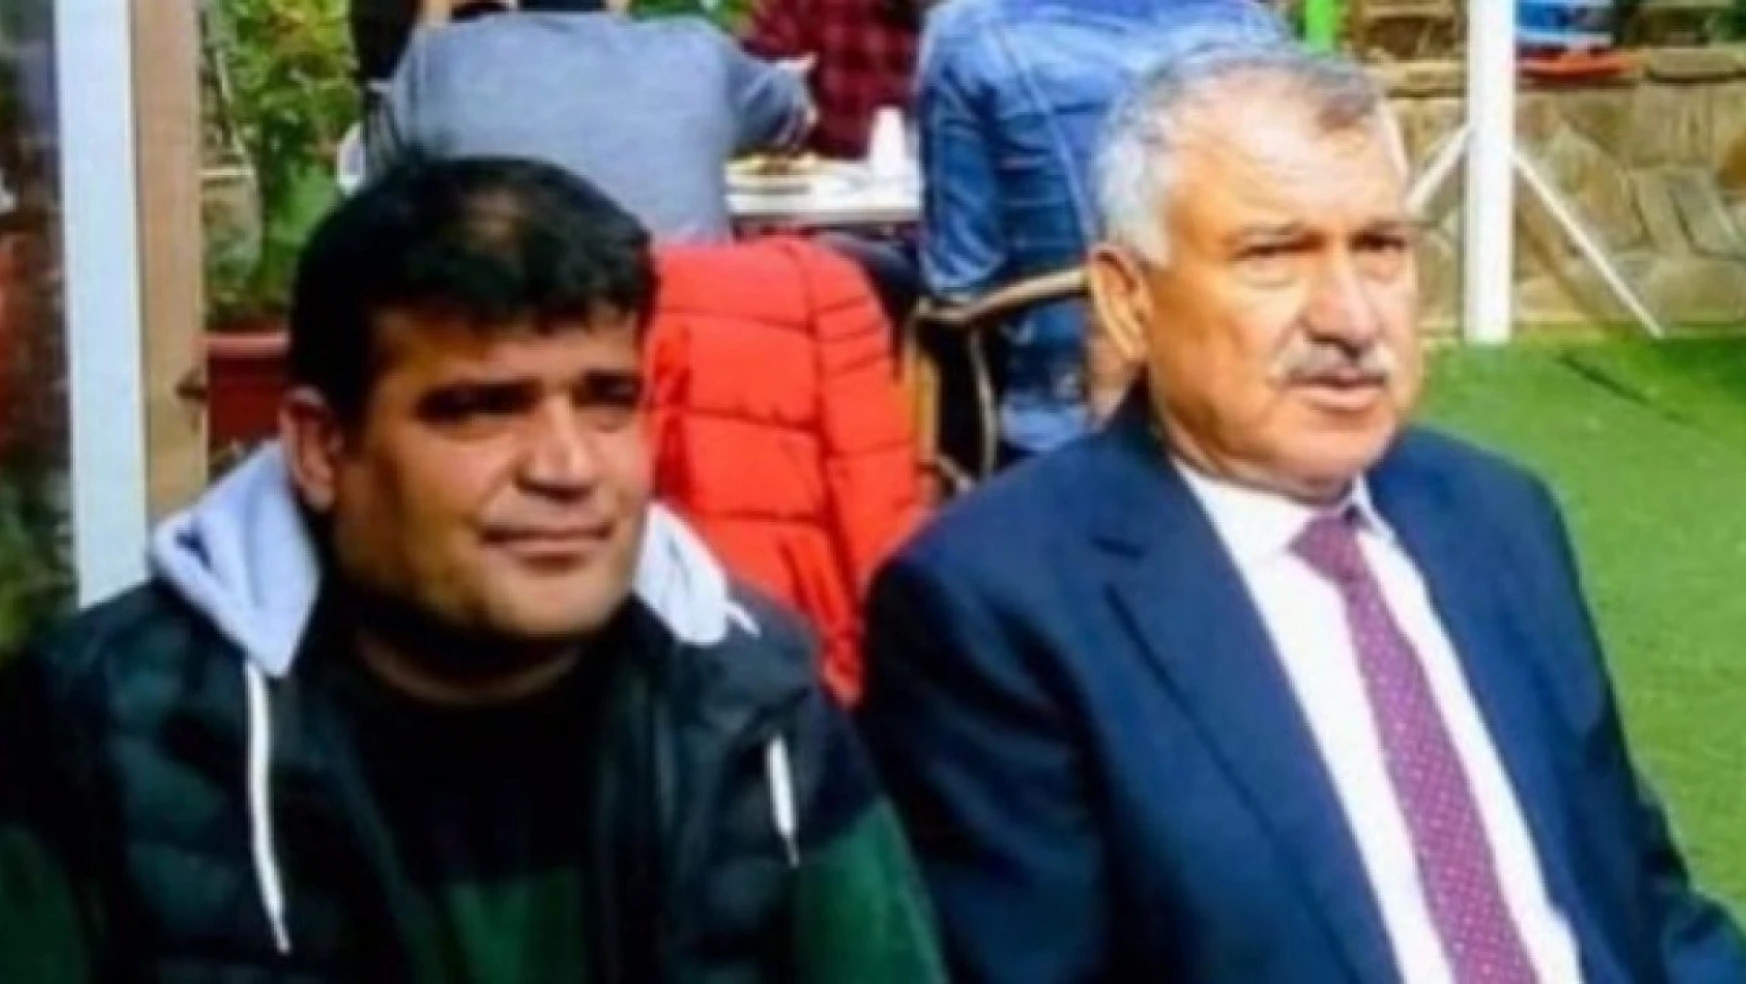 Adana'da özel kalem müdür vekilini vuran şüphelinin ilk ifadesi orta çıktı